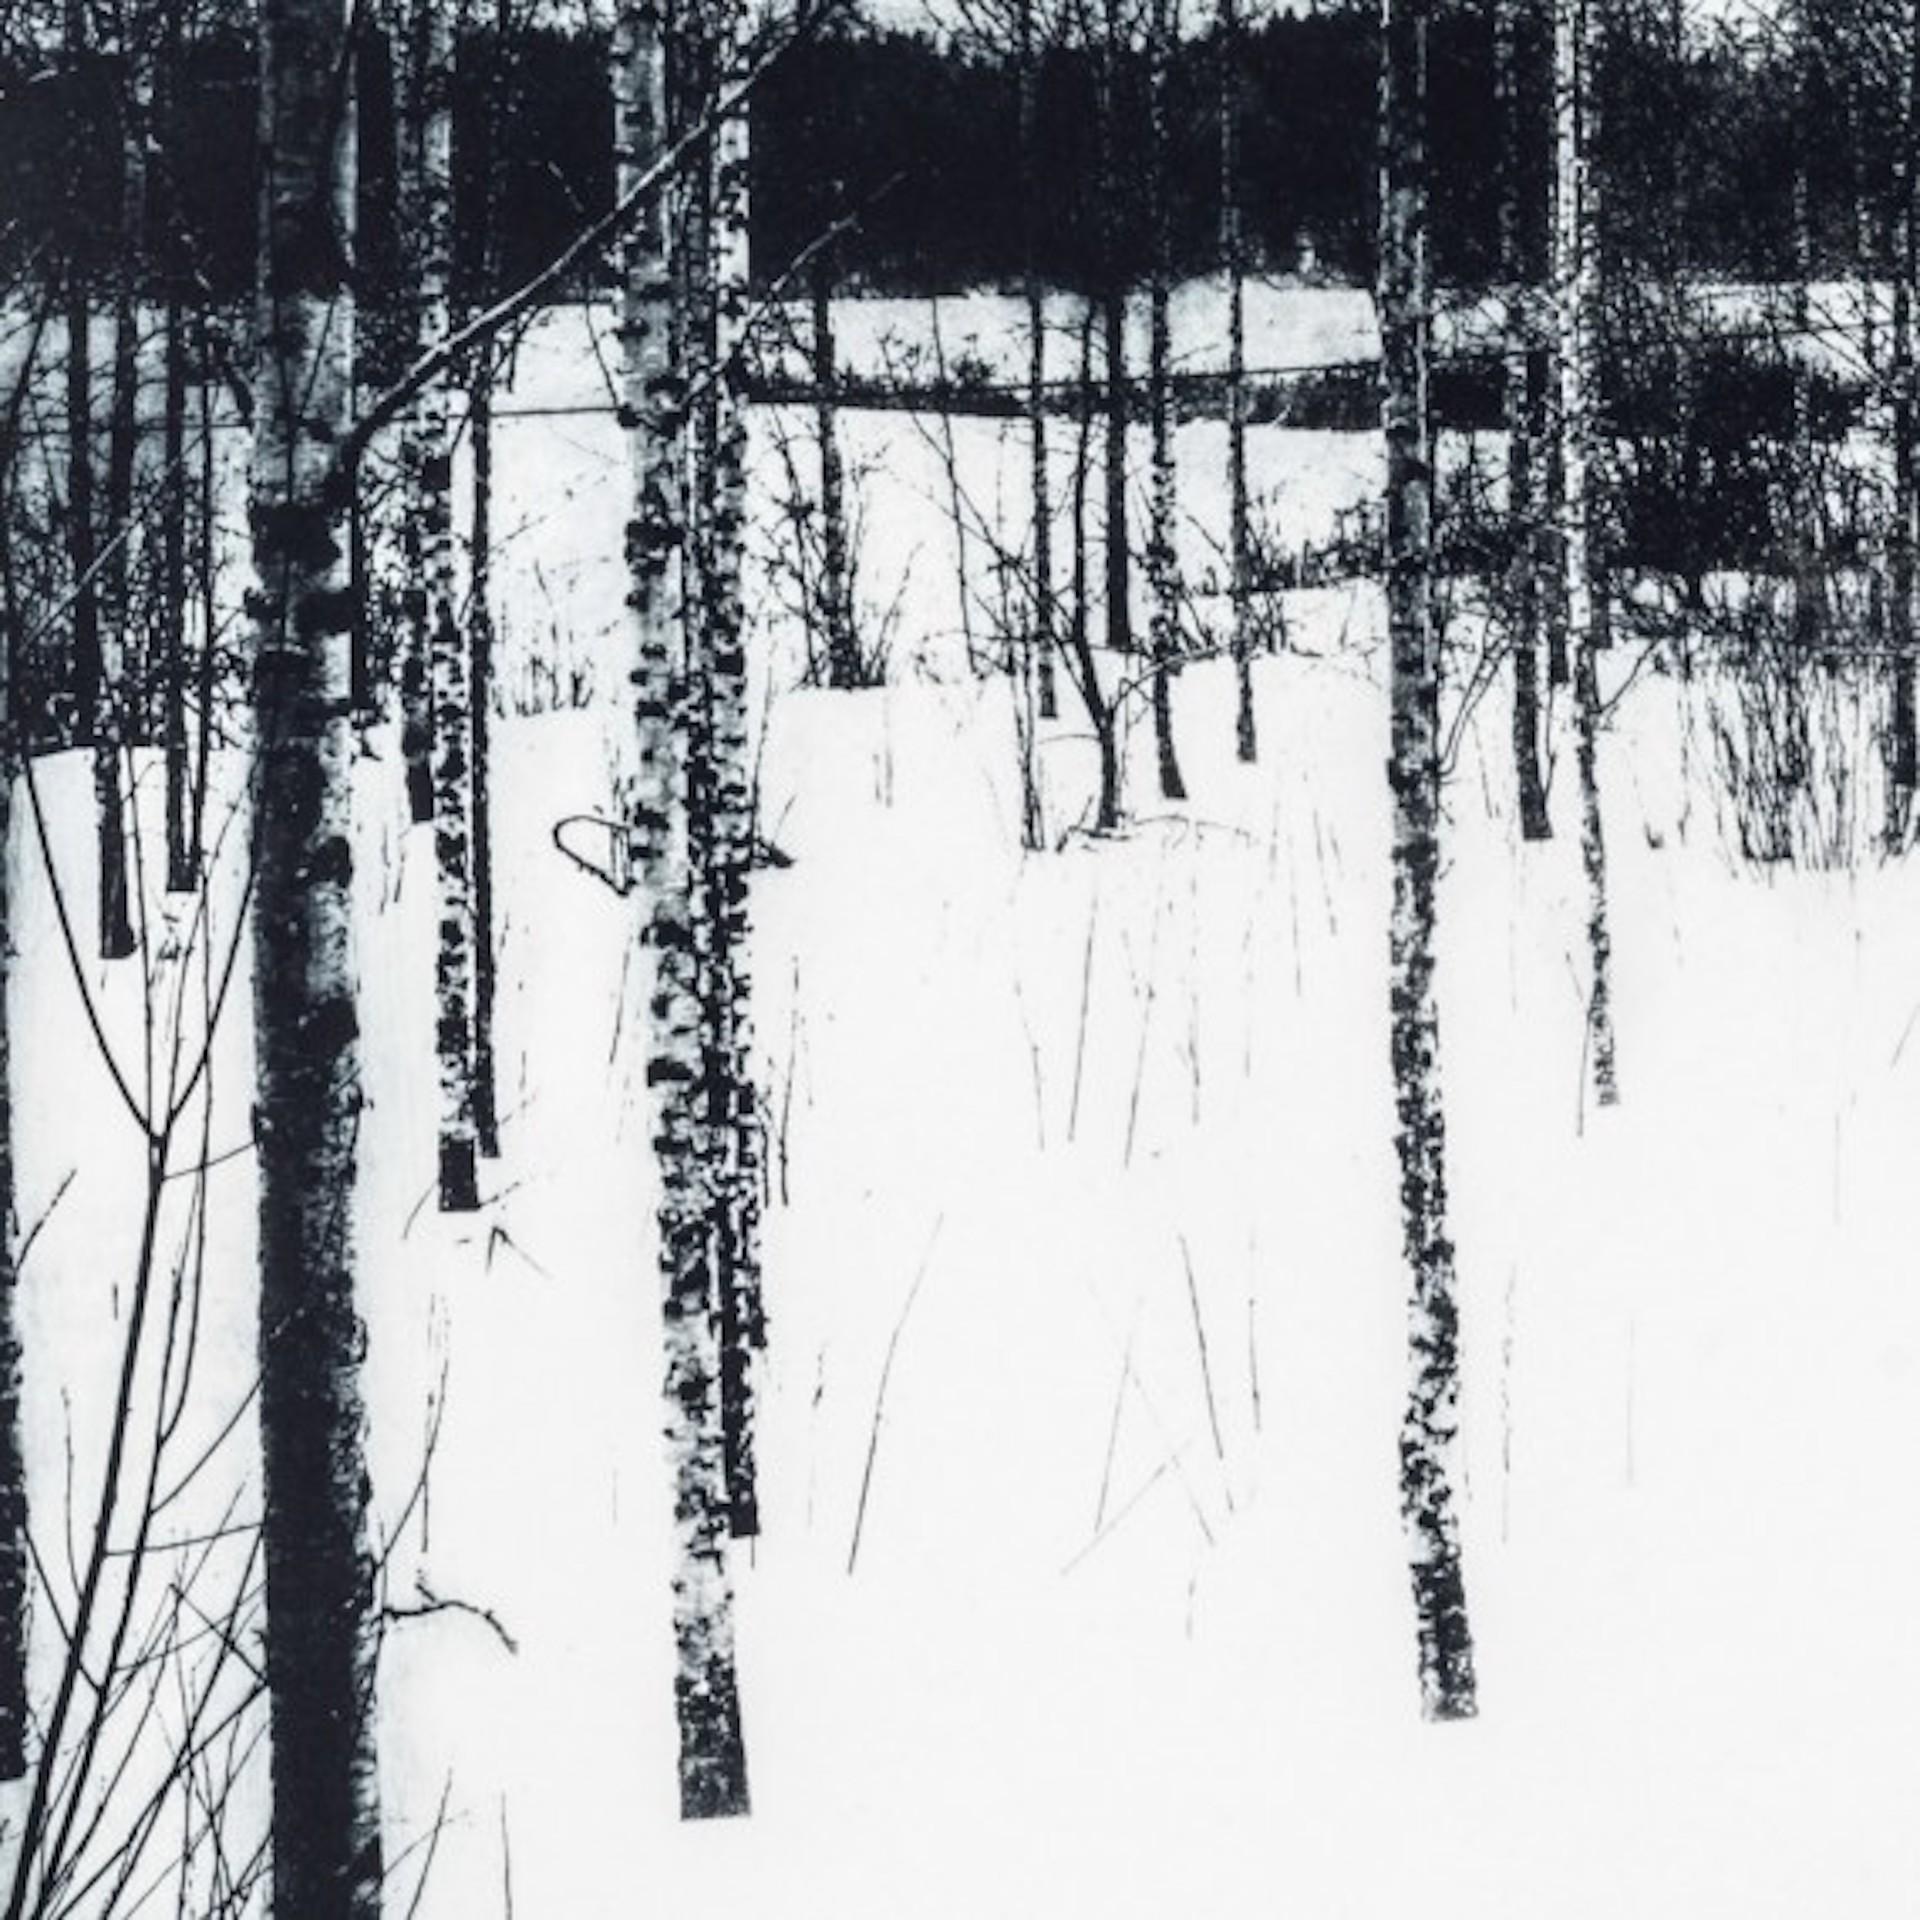 Neula ist eine signierte Radierung auf Papier von Sarah Duncan in limitierter Auflage, die einen schwarz-weiß verschneiten Wald im Winter mit kahlen Bäumen und Schnee auf dem Boden zeigt. Dieses Werk ist in einer limitierten Auflage von 10 Stück